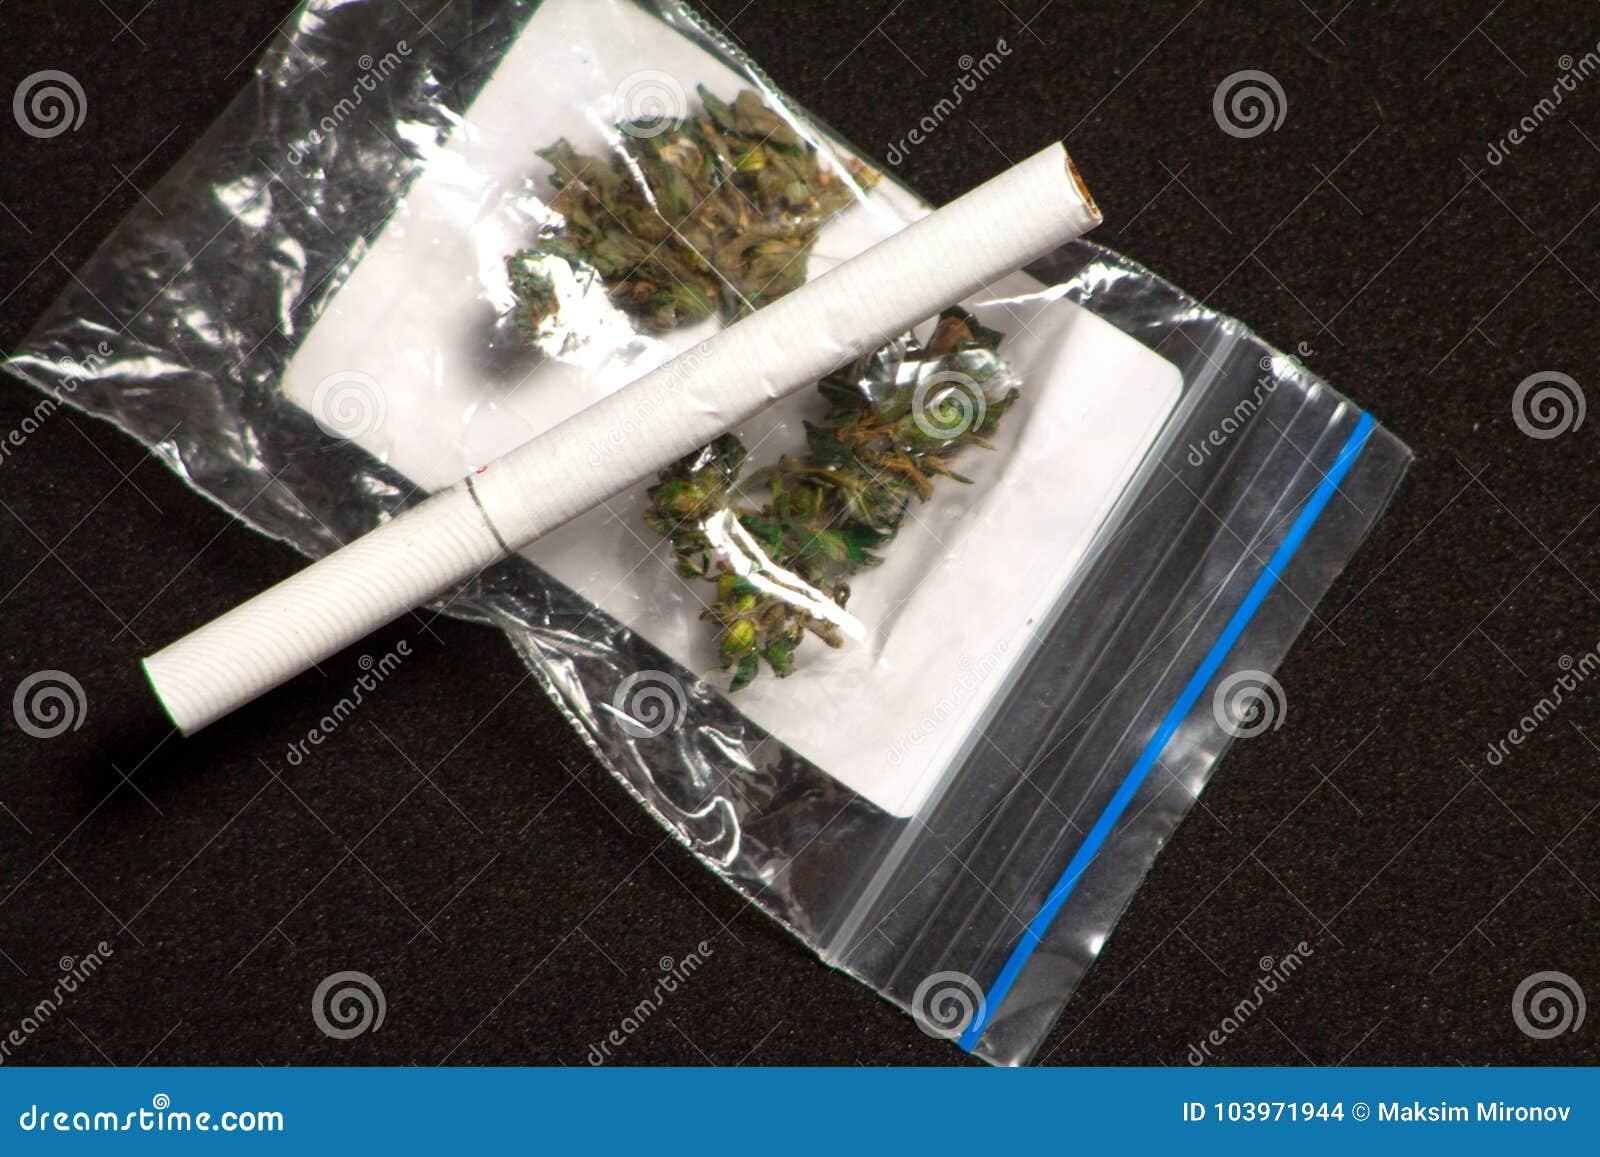 Конопля курить трубку тест полоска для выявления в моче человека марихуаны